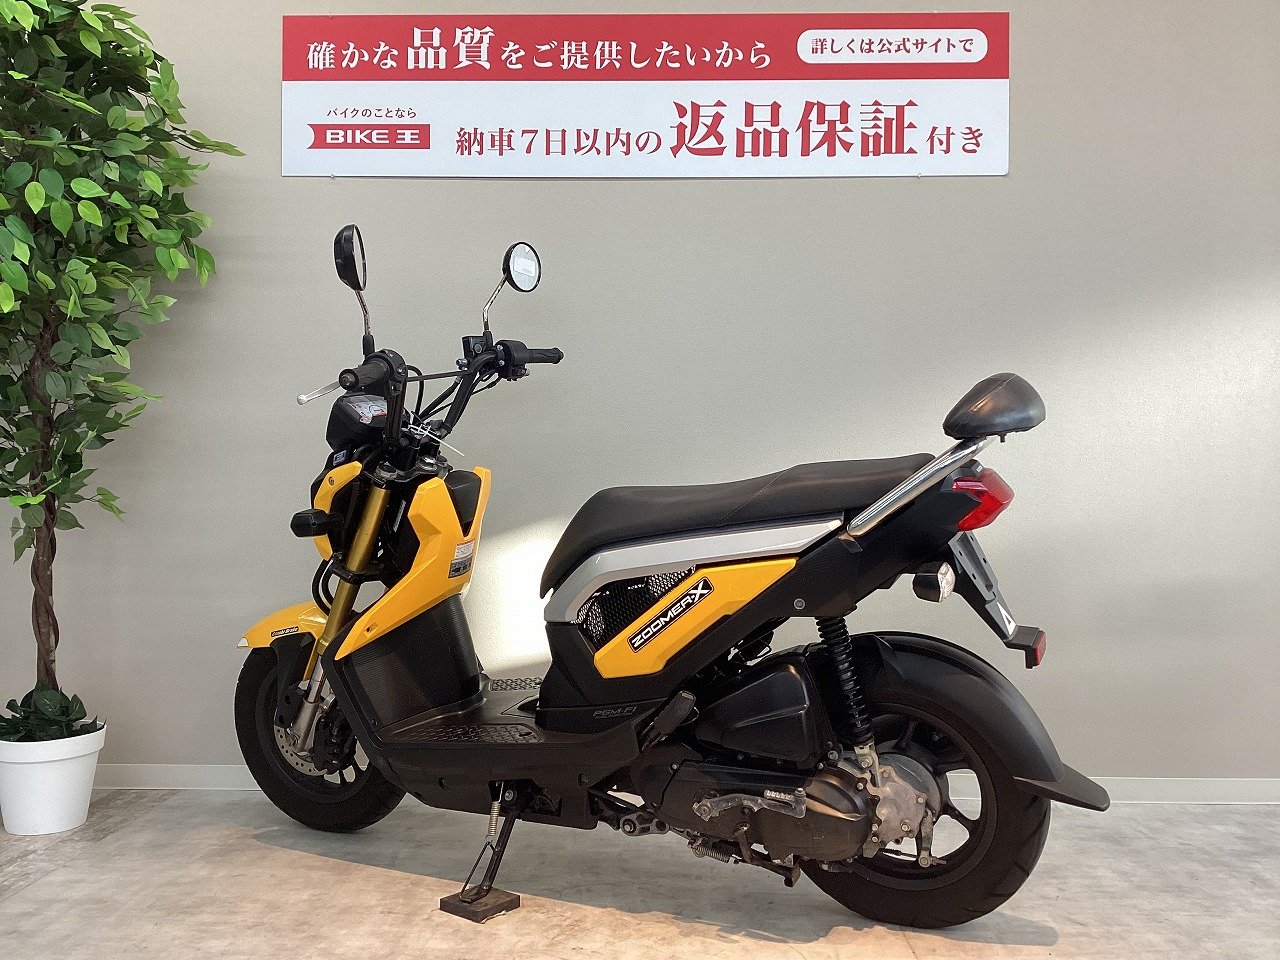 大型バイク カワサキKawasaki ZZR1400 ZX14 モンスター仕様！ガラス 